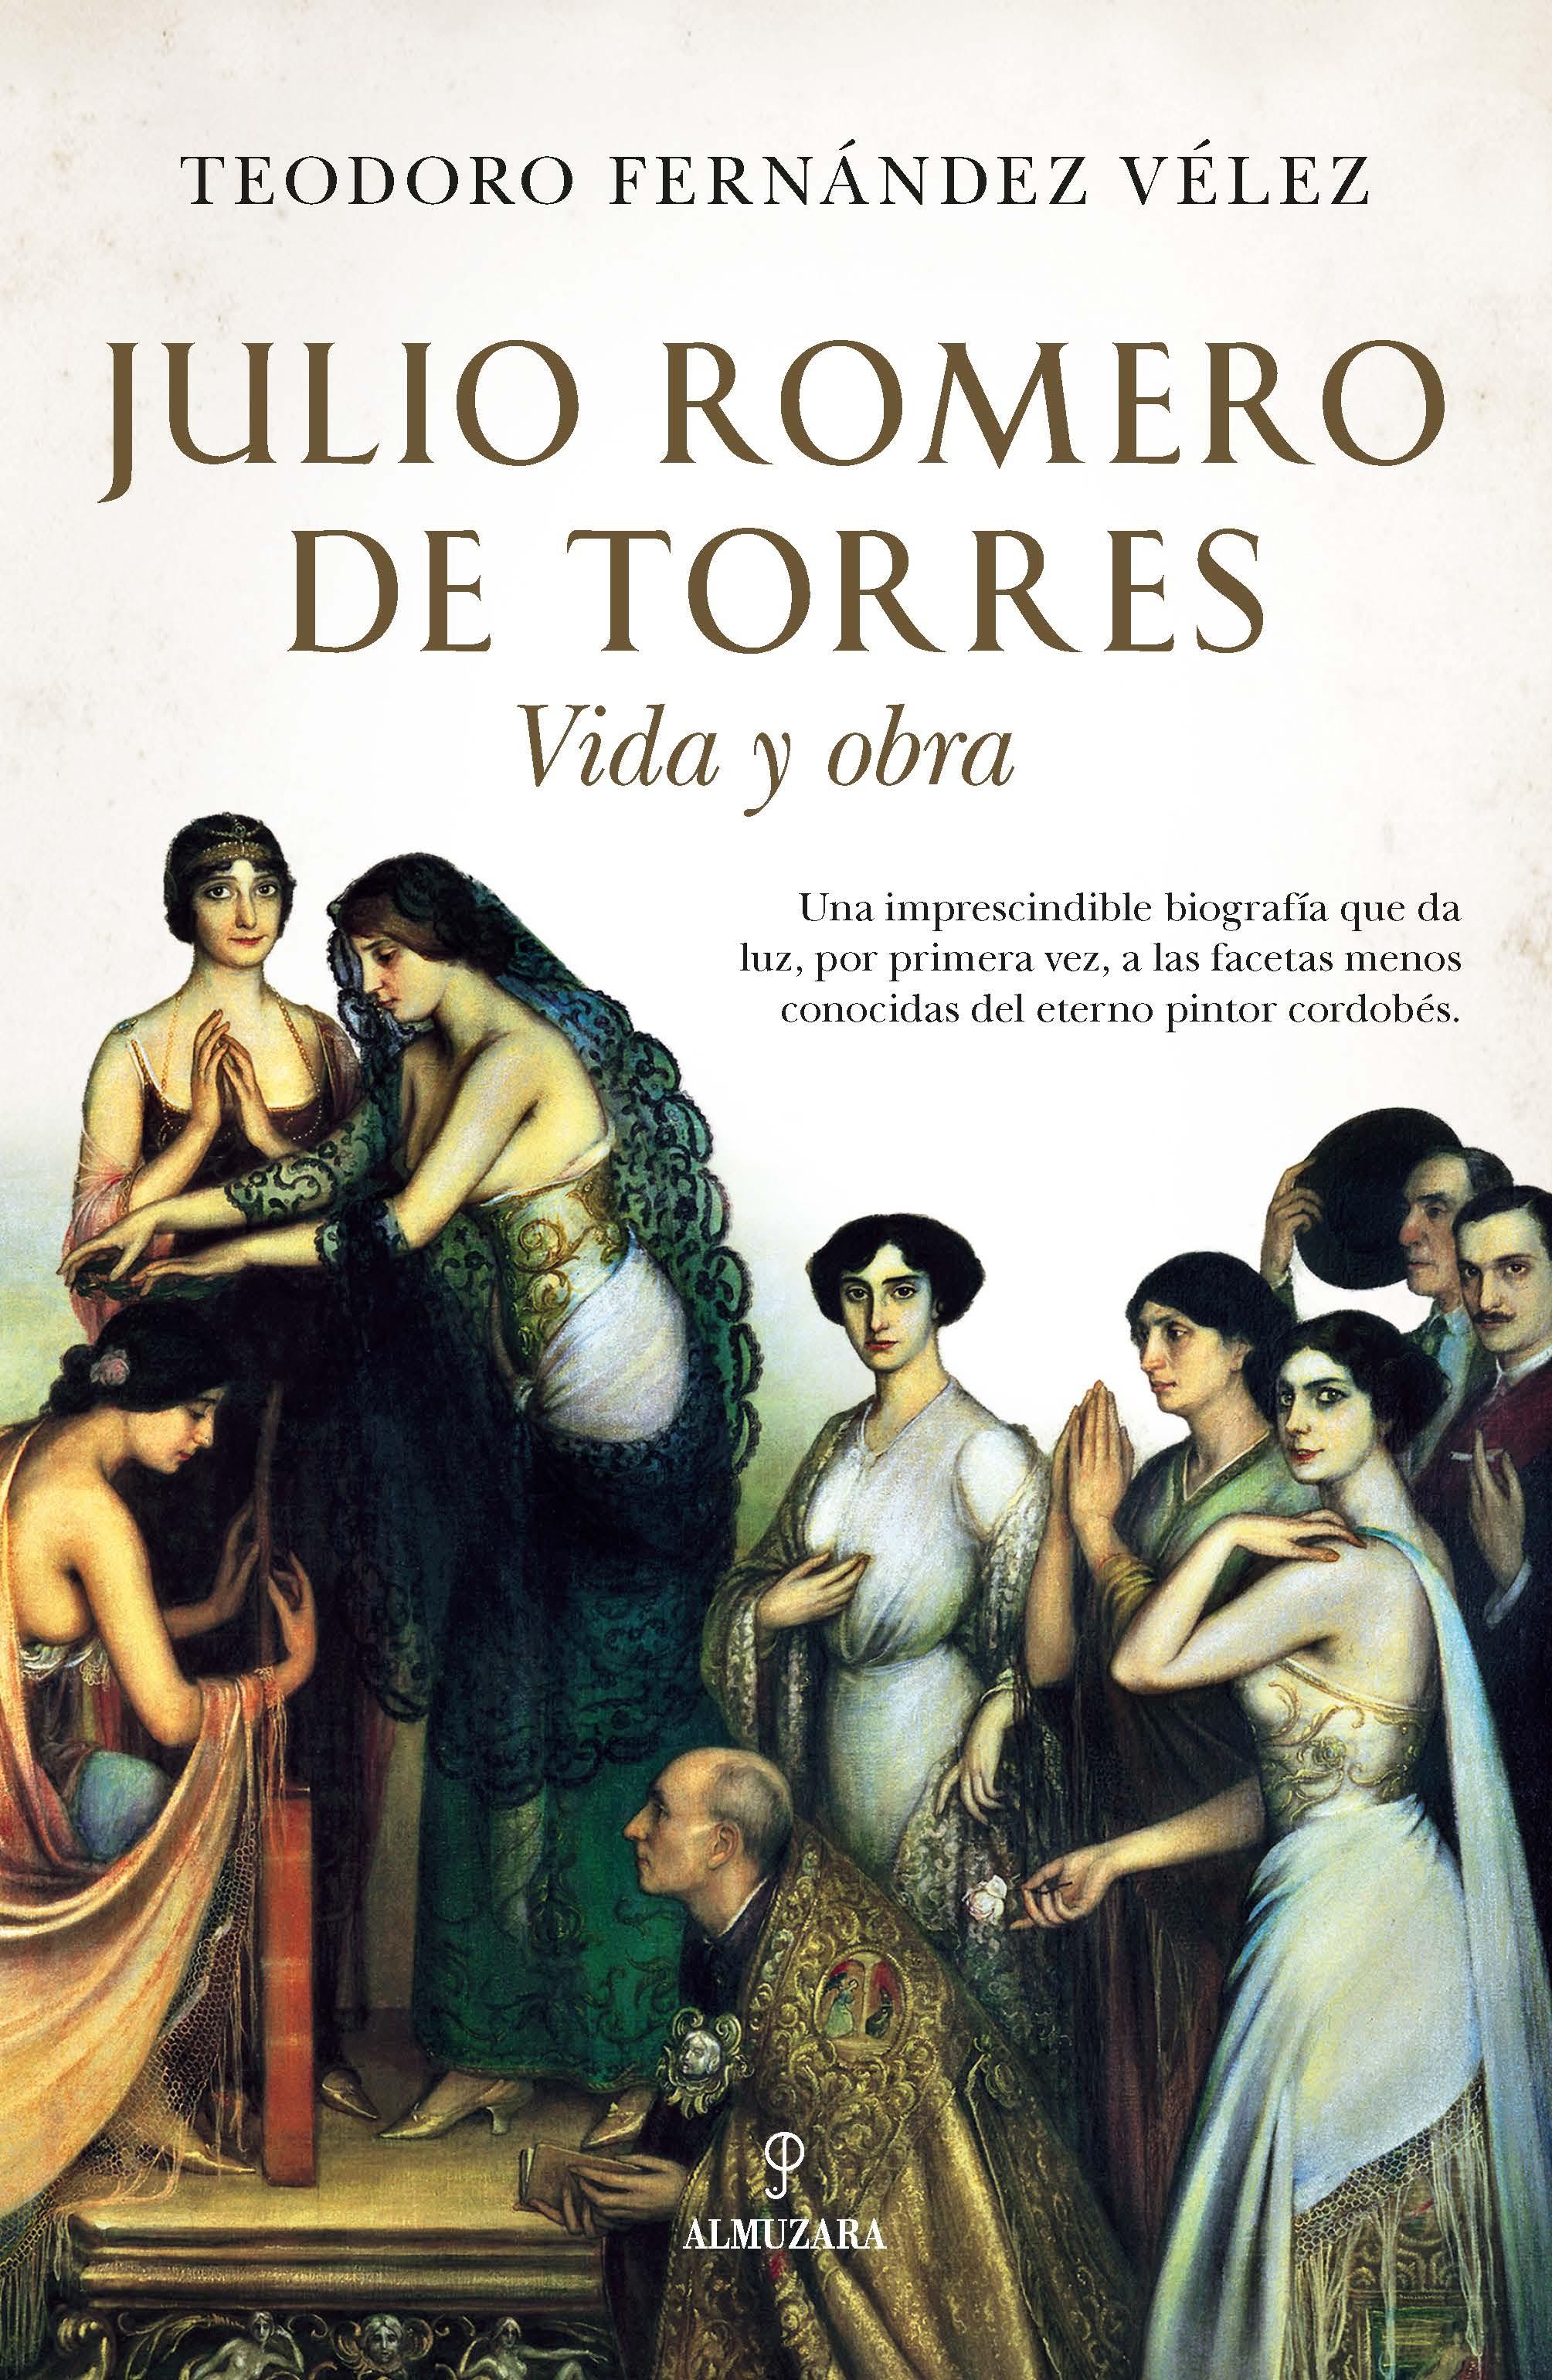 JULIO ROMERO DE TORRES "Vida y obra"